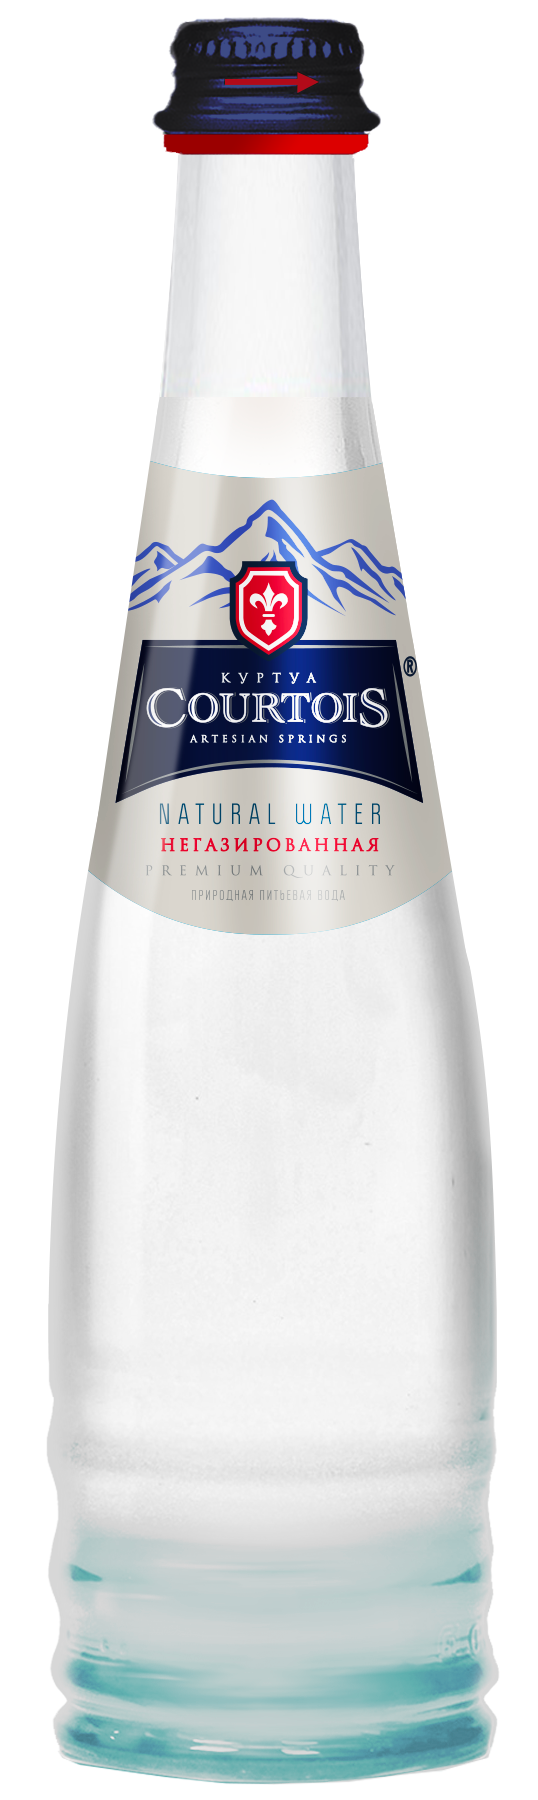 Вода "Куртуа" (Courtois)" 0,33 литра, без/газа, стекло (12 шт/уп)